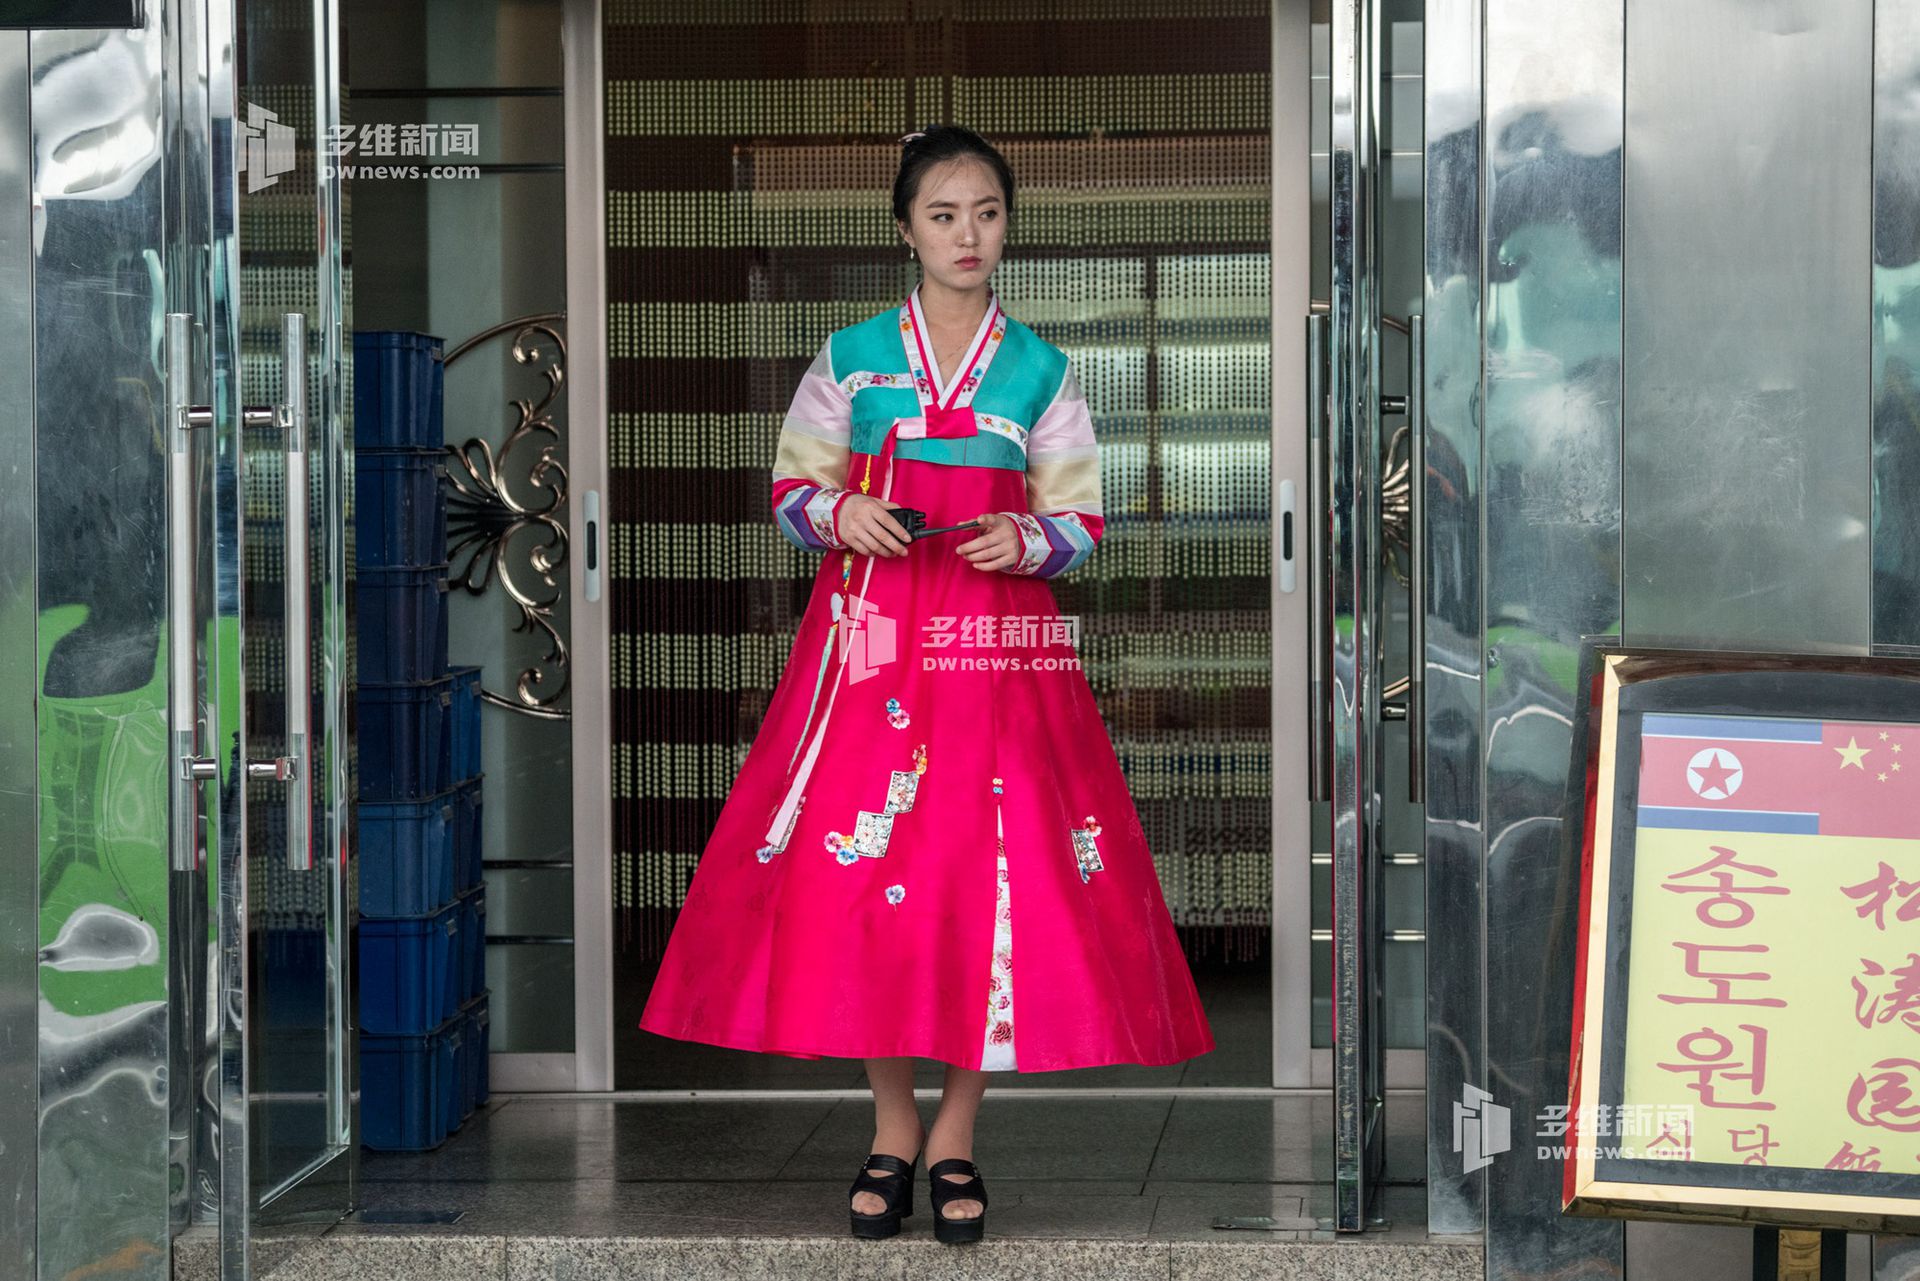 朝鲜国营饭店店内服务员是清一色的朝鲜姑娘，玲珑、清秀，笑起来声音格外甜美。拍照合影是不允许的，她们大都是朝鲜在读的大学生，被政府派来进行实习，属于“国家行为”。